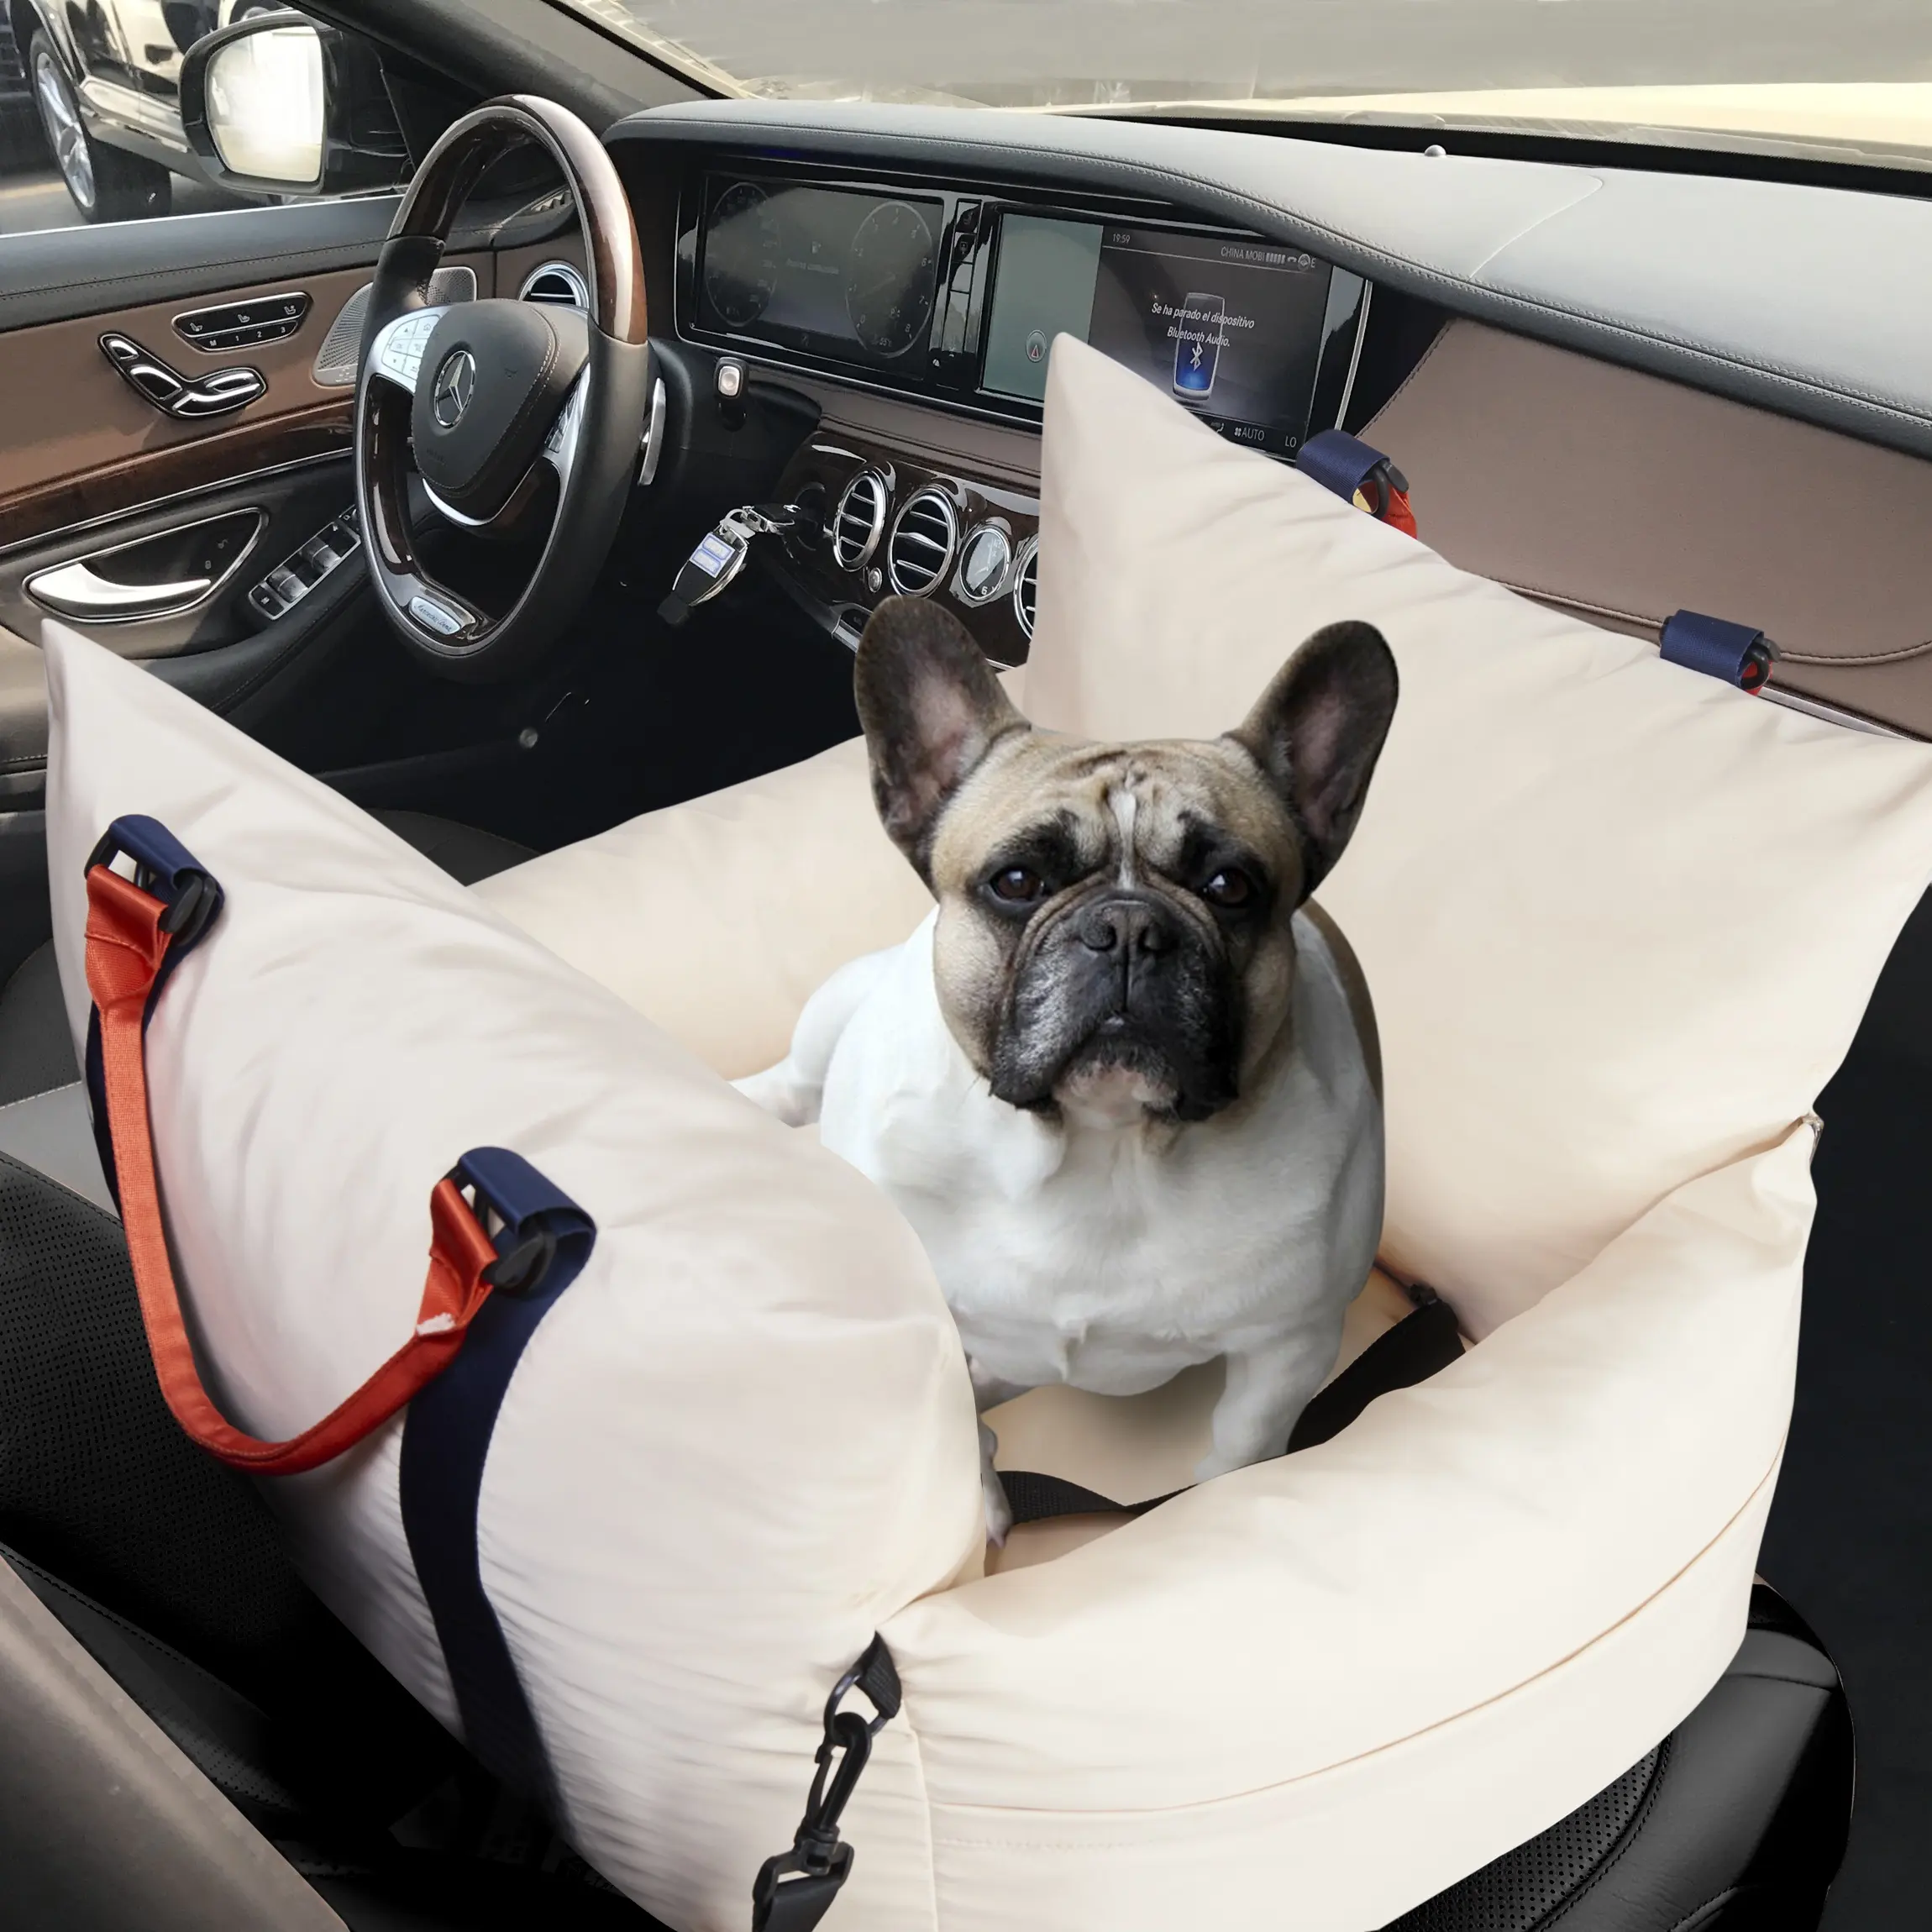 Siège de voiture multifonctionnel pour chien Lit de voyage pour chien avec ceinture de sécurité et laisse pour chien à l'intérieur; imperméable et résistant aux plis pour l'extérieur